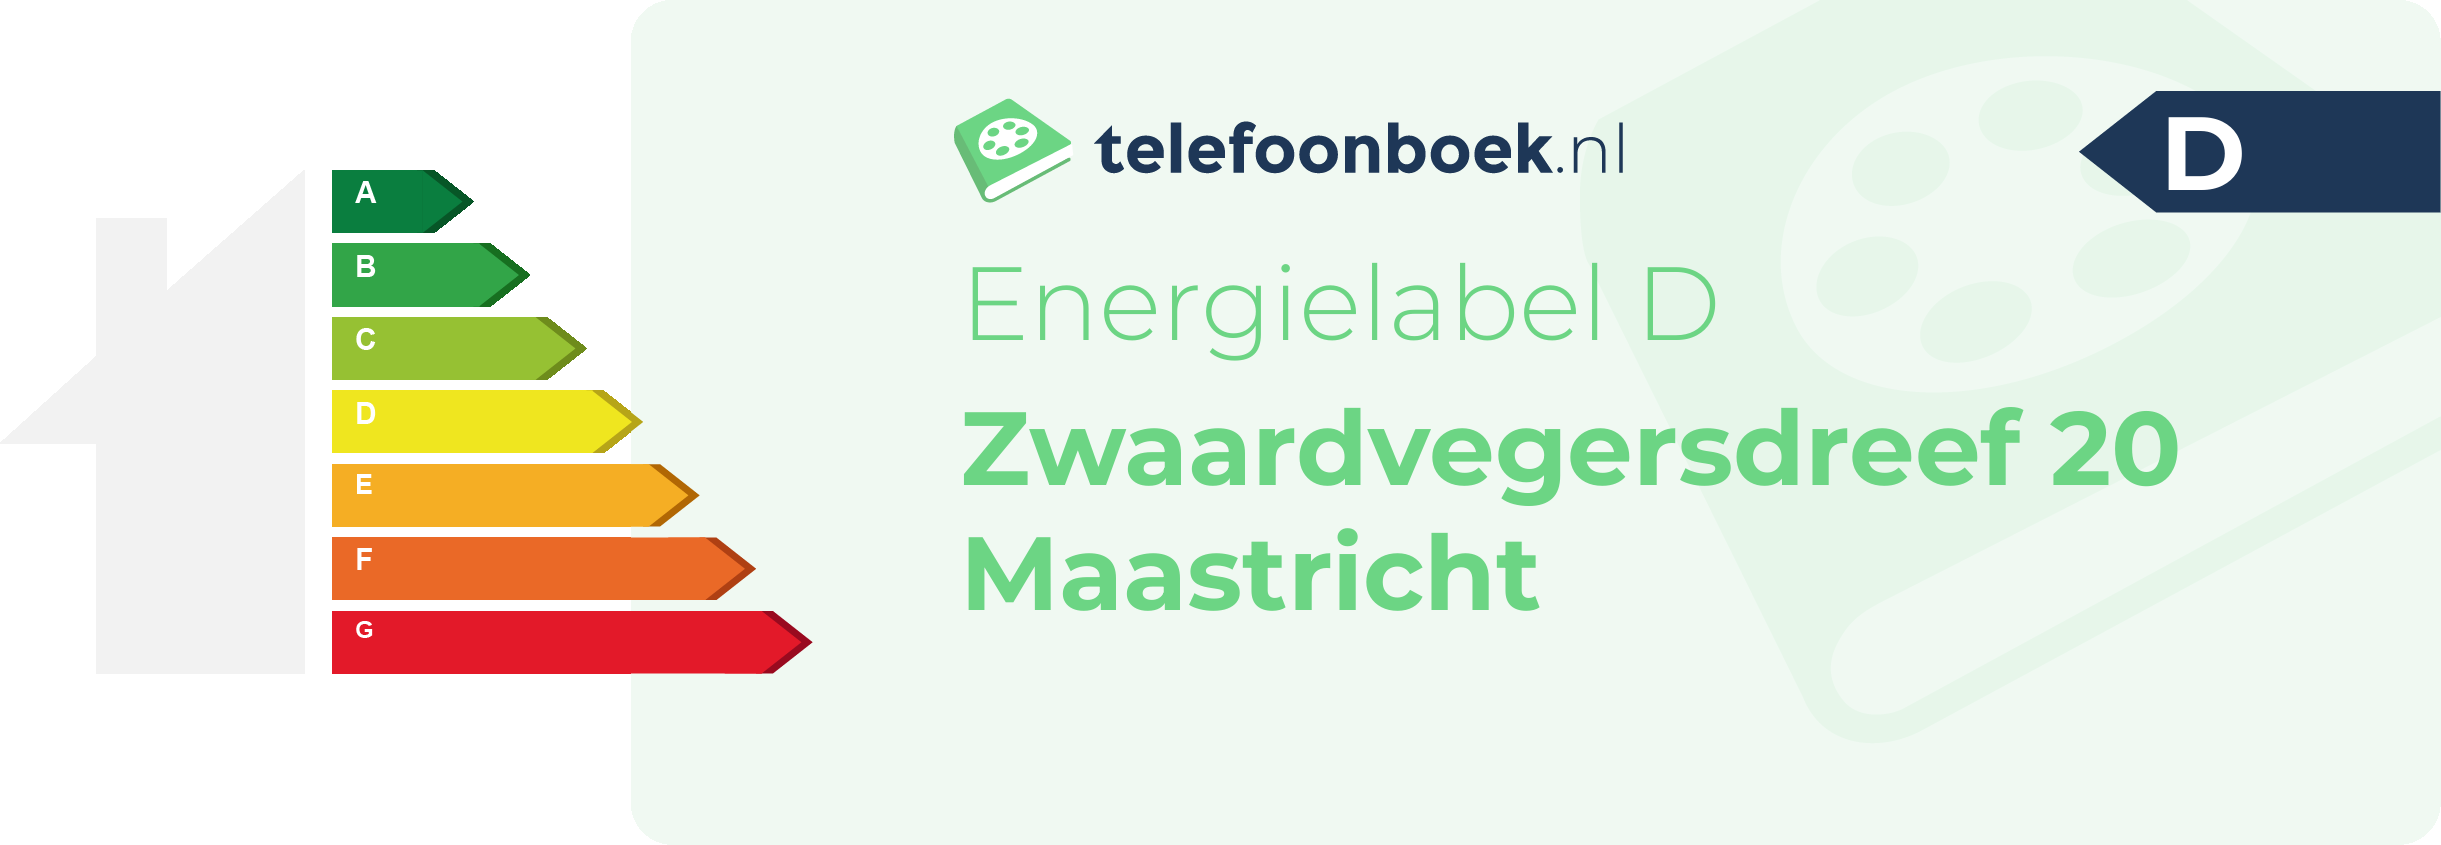 Energielabel Zwaardvegersdreef 20 Maastricht